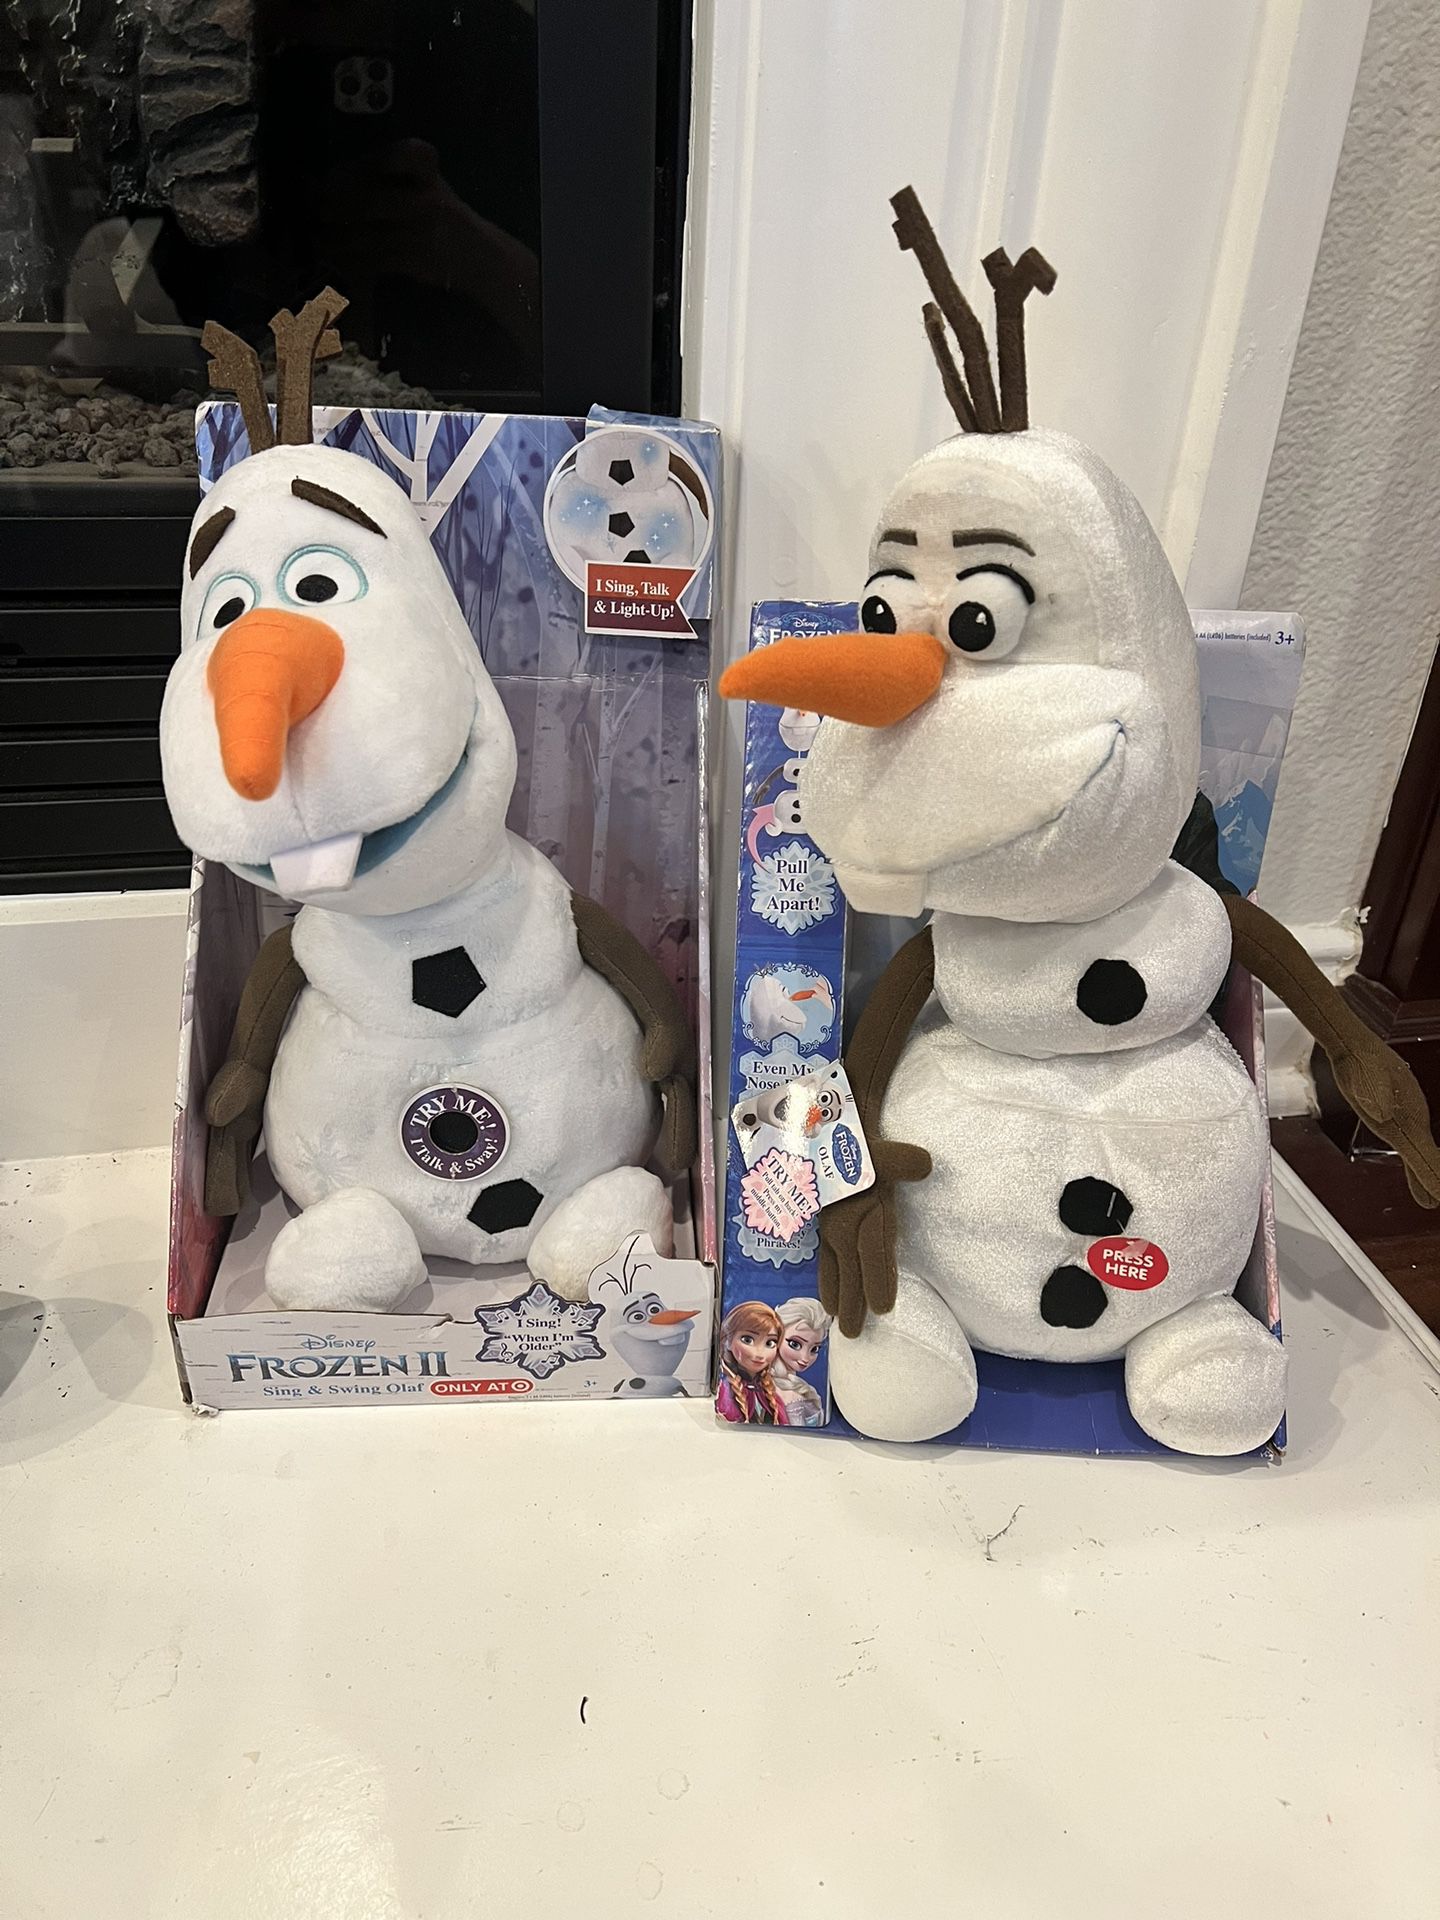 Two Still In Box Olaf Stuffed Animals